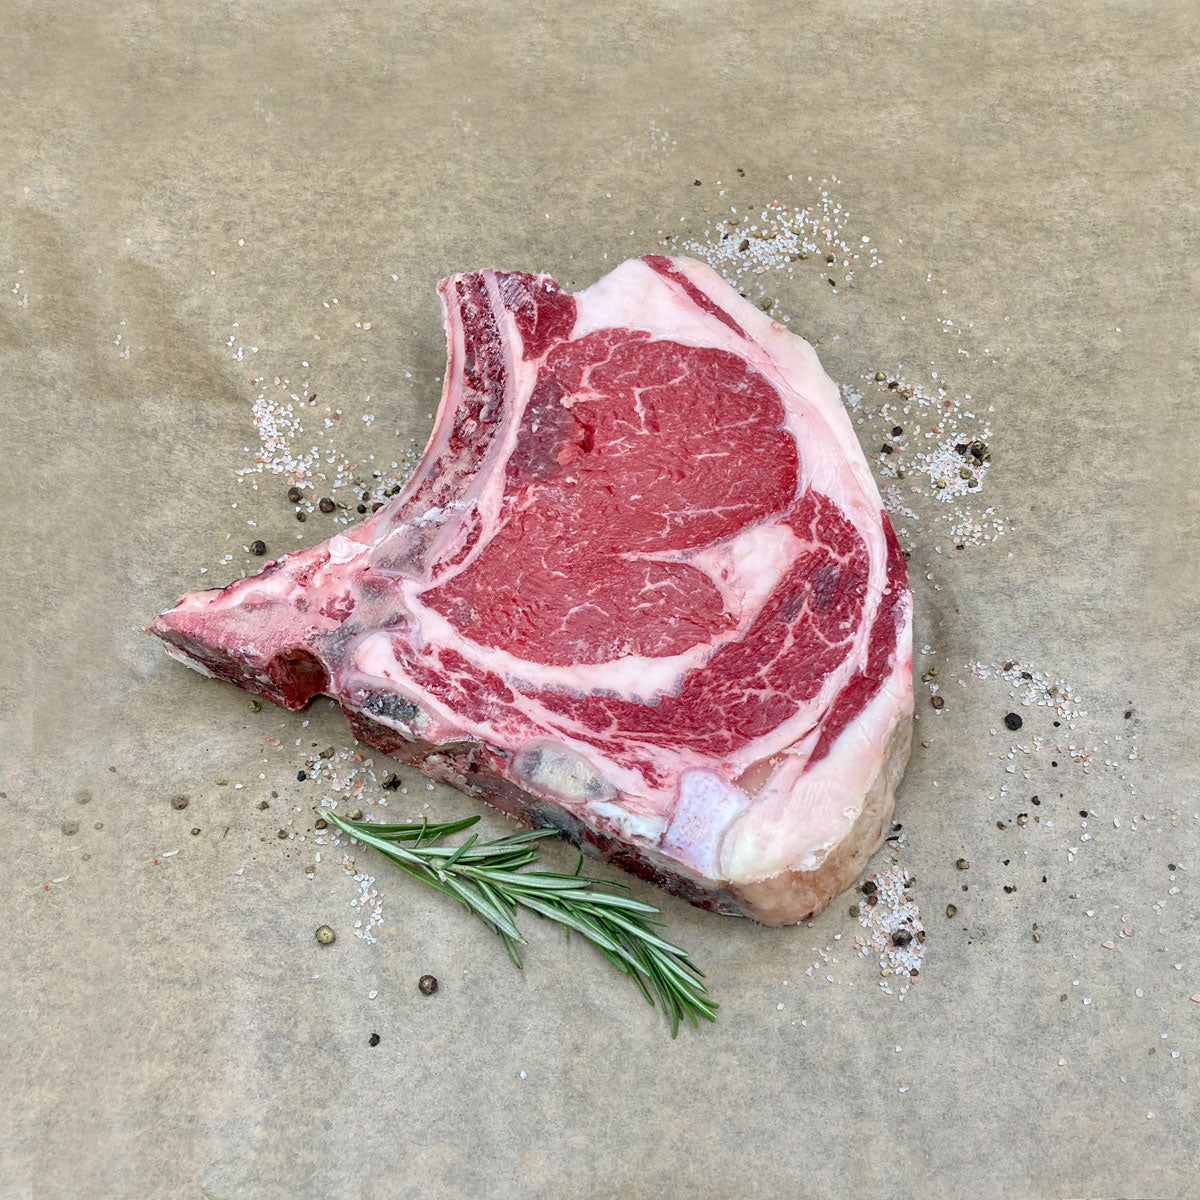 Rib Eye Bone In Steak mit Rosmarin, Salz und Pfeffer